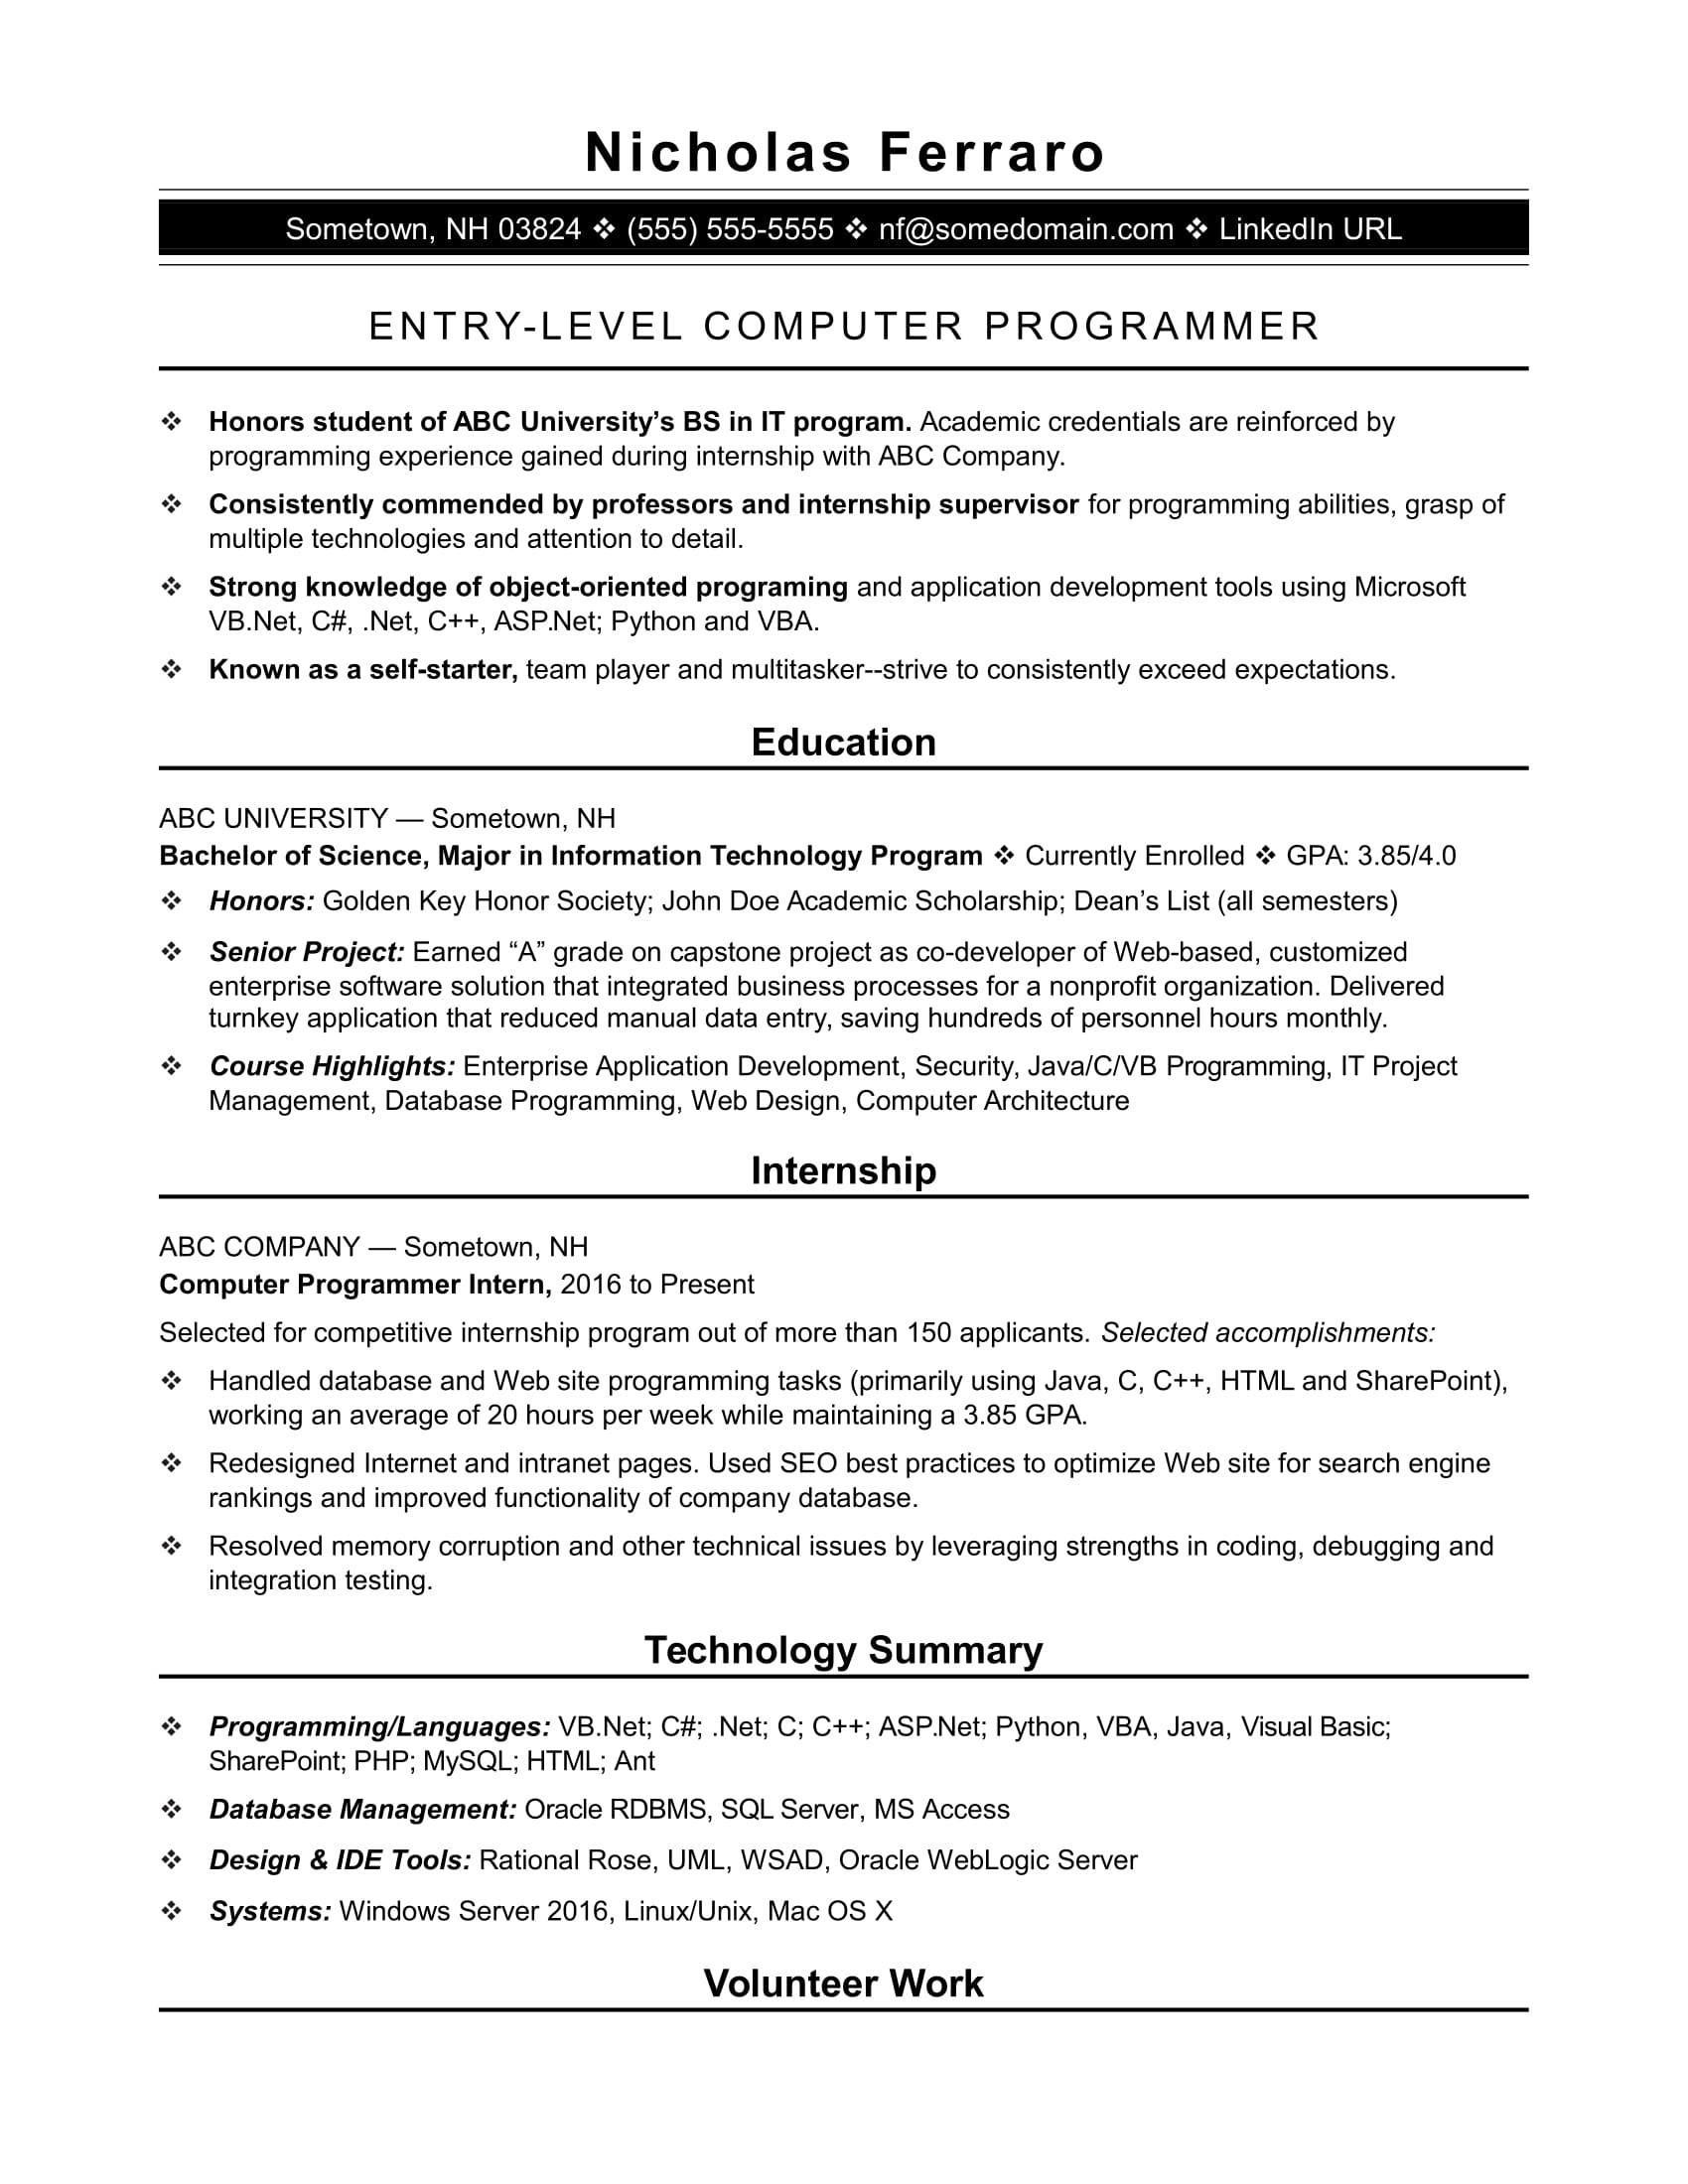 Sample Resume Of Entry Level Web Developer Entry-level Programmer Resume Monster.com